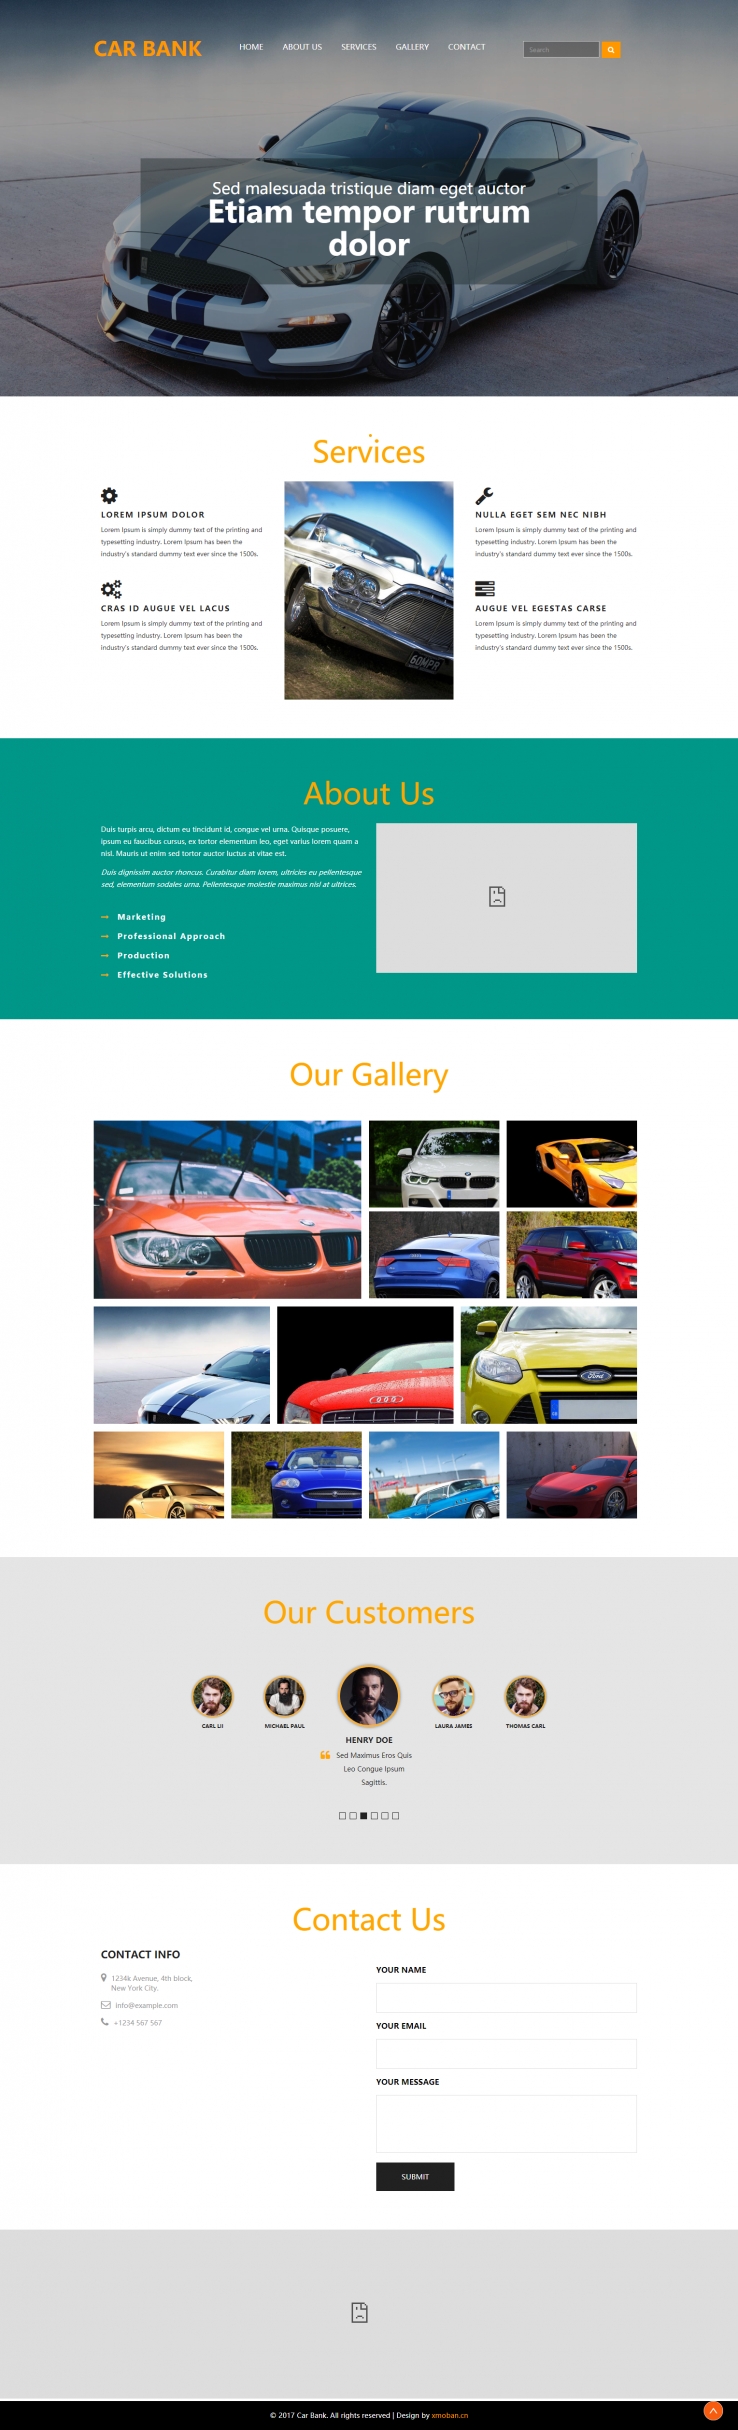 橙色欧美风格的高端汽车保养企业网站源码下载